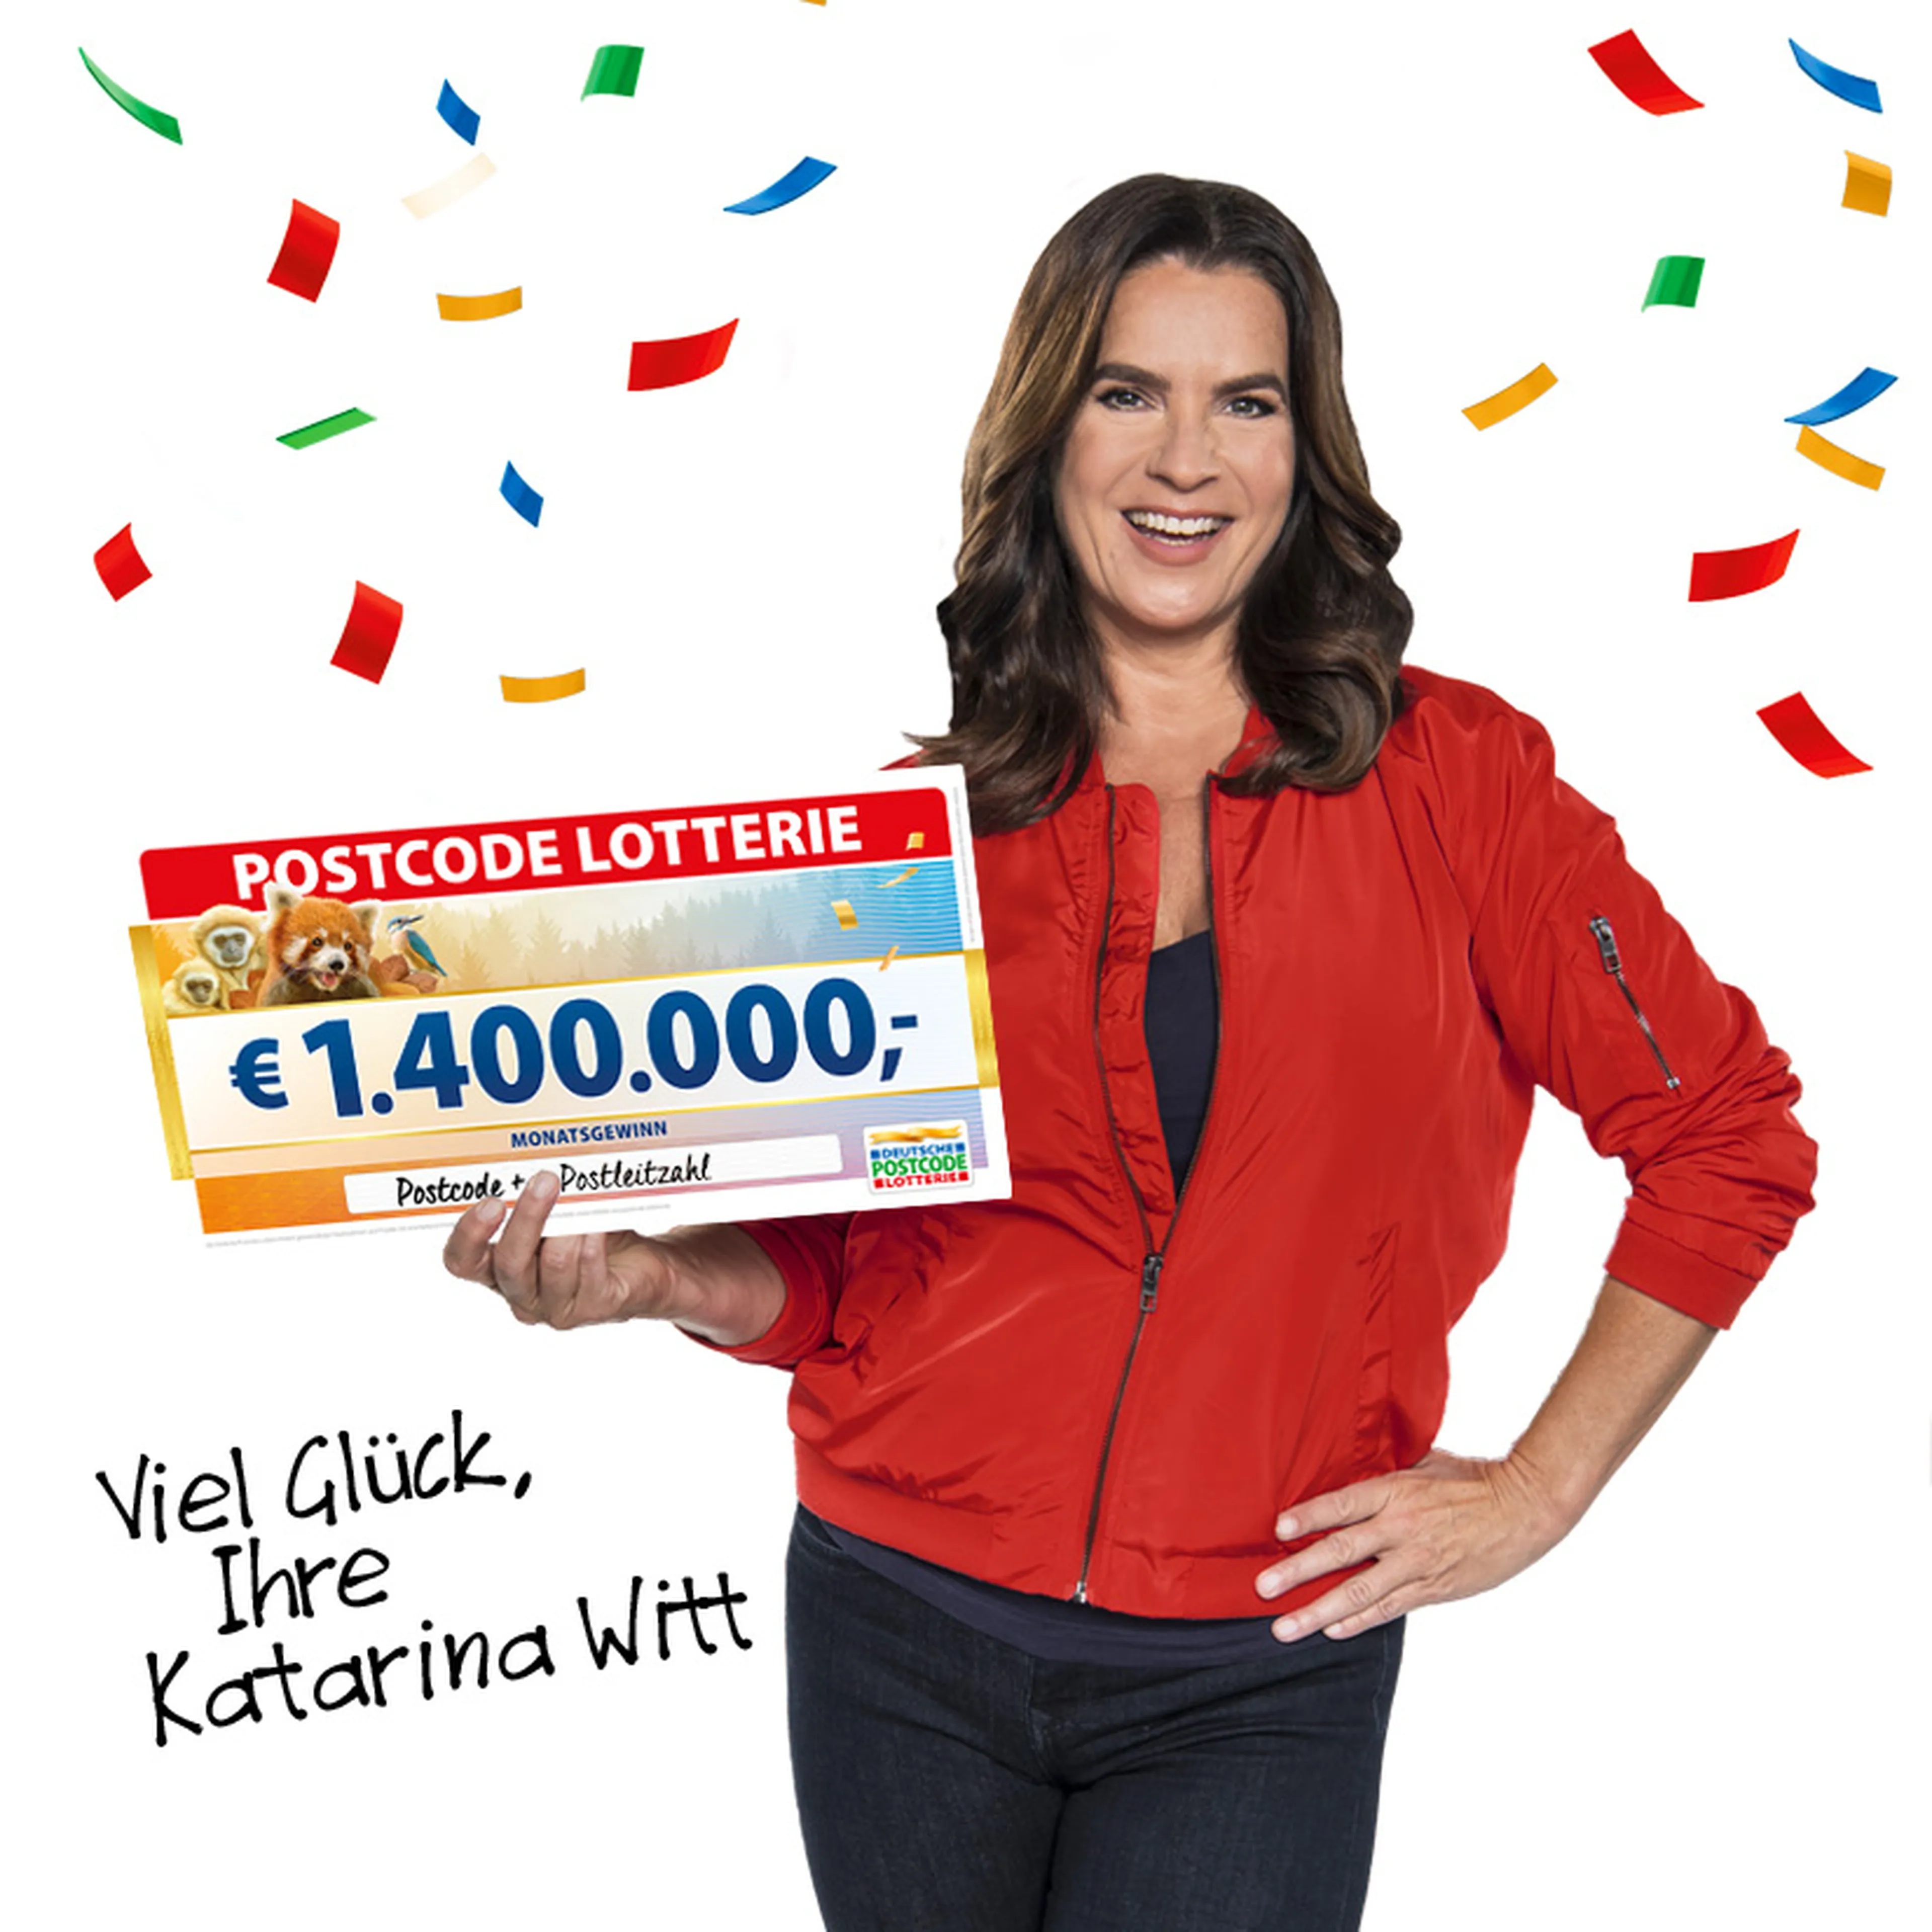 Katarina Witt hält einen Lotterieschein im Wert von 49,9 Millionen Euro in der Hand und wünscht Ihnen viel Glück